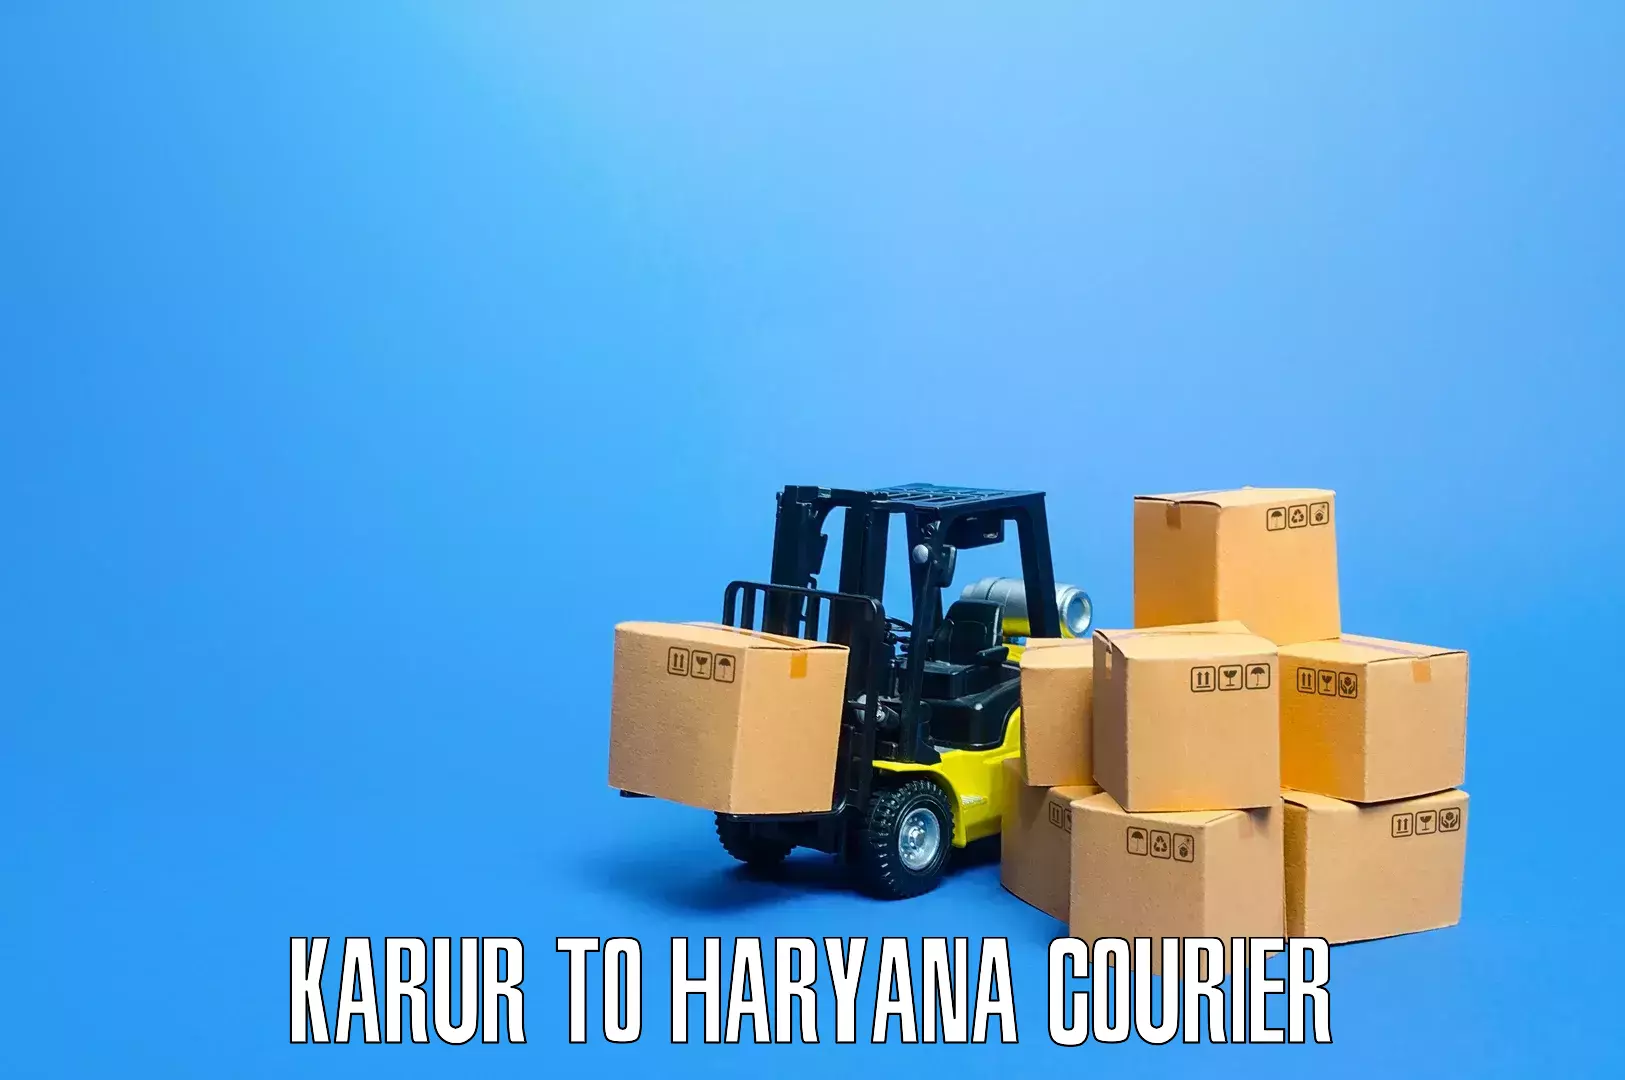 Furniture moving experts Karur to Narwana